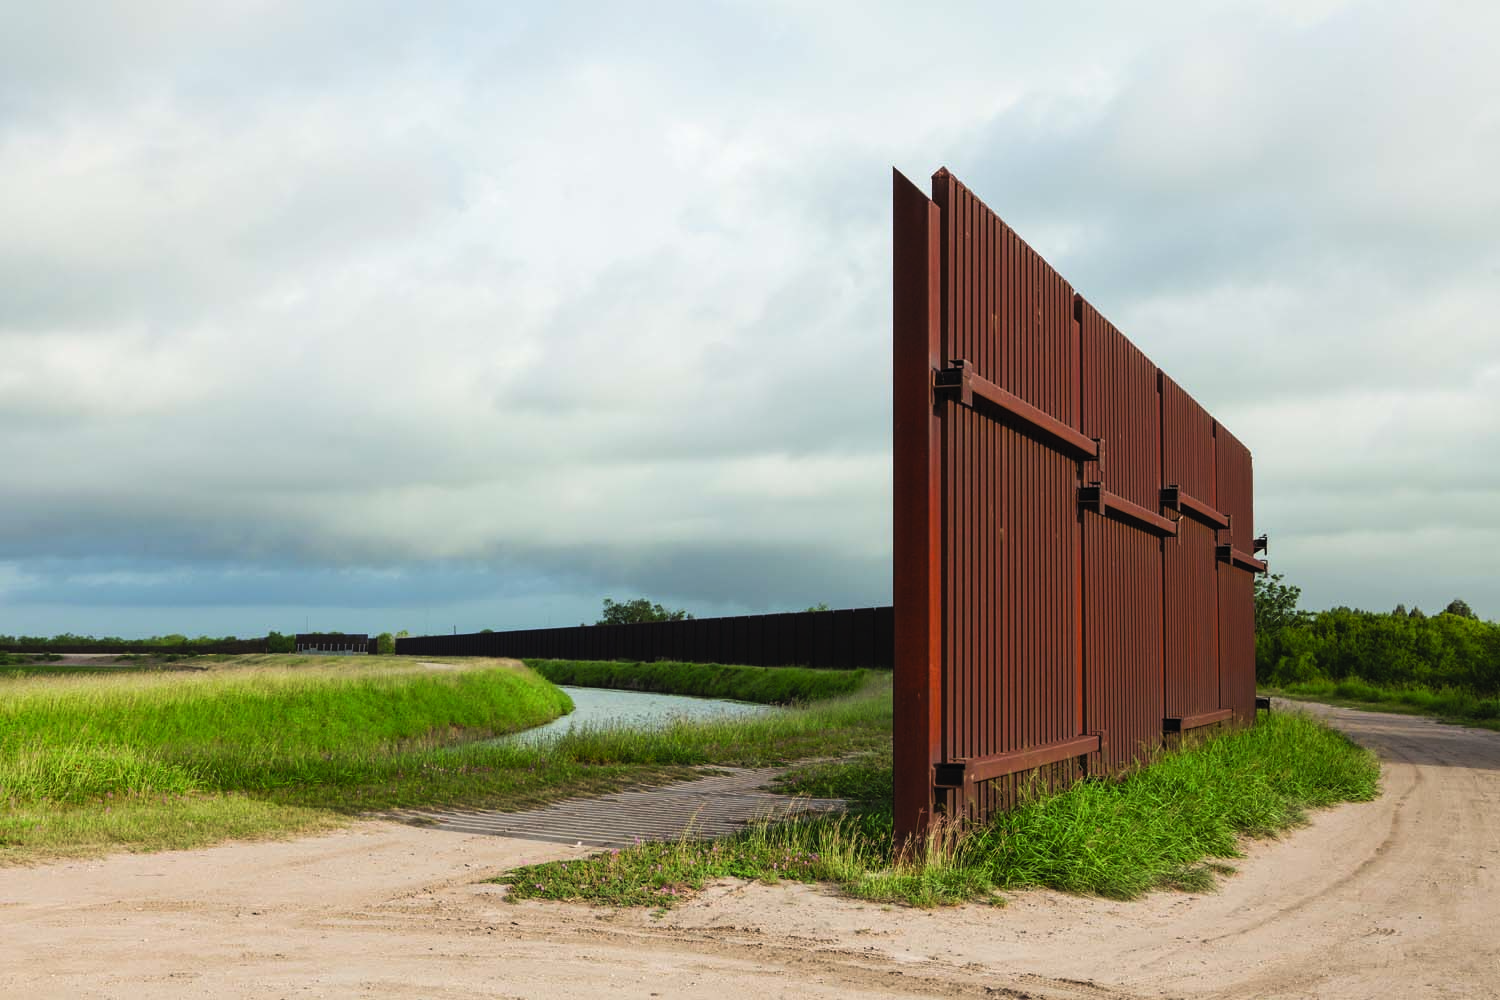 The border fence, Rio Grande Valley, Texas.